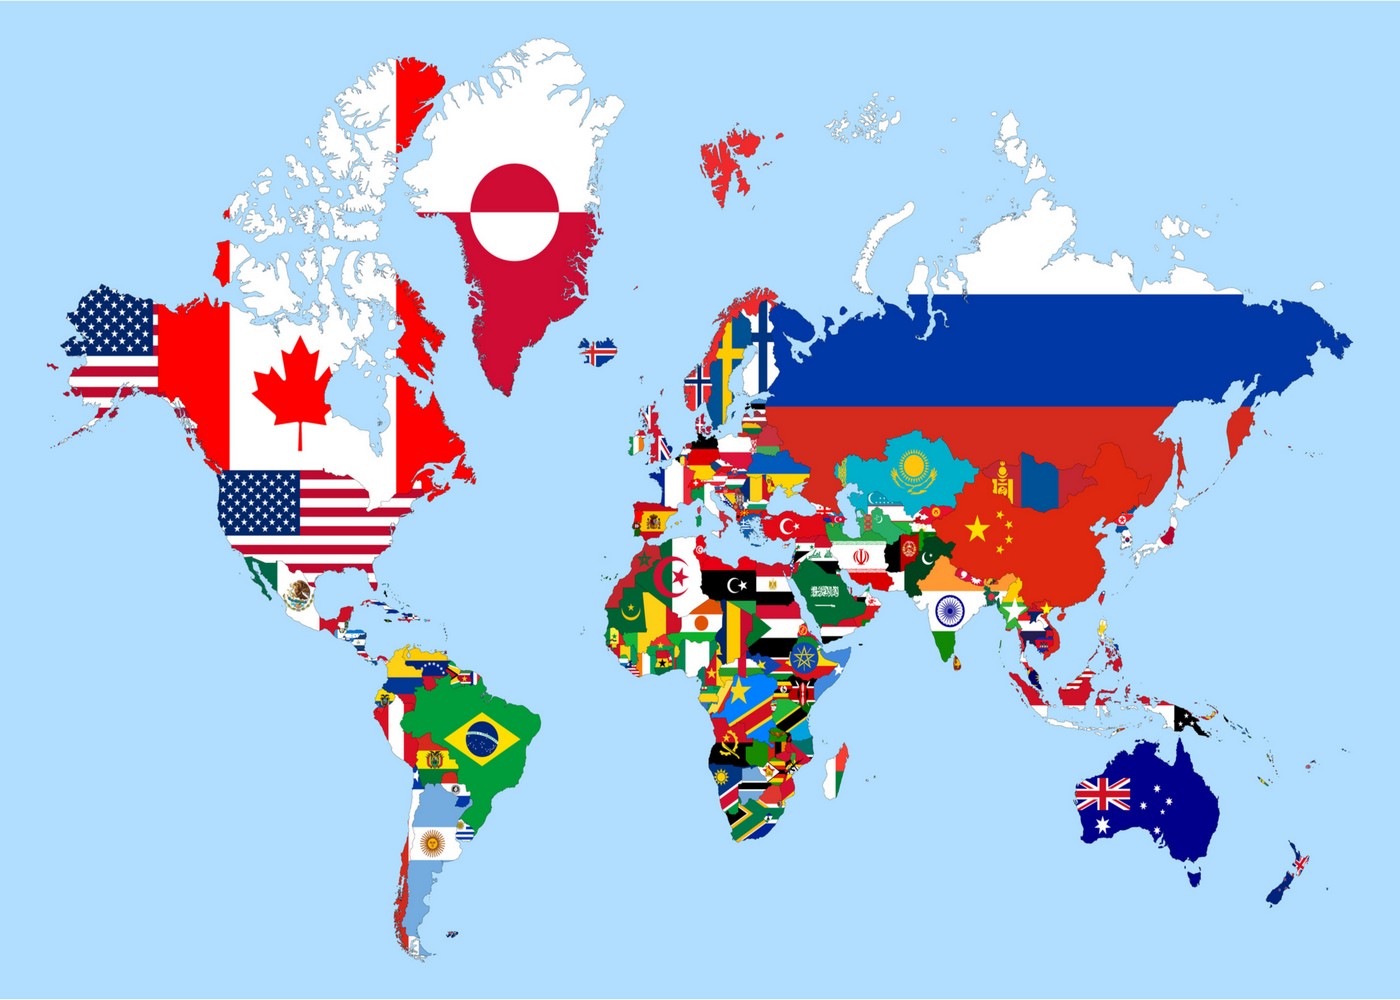 Tra cứu bản đồ các nước trên thế giới: Bạn cần tìm kiếm thông tin về bản đồ các nước trên thế giới? Hãy đến với chúng tôi để tra cứu với đầy đủ thông tin, từ địa lý đến dân số và văn hóa của mỗi quốc gia. Hãy khám phá thế giới ngay hôm nay!